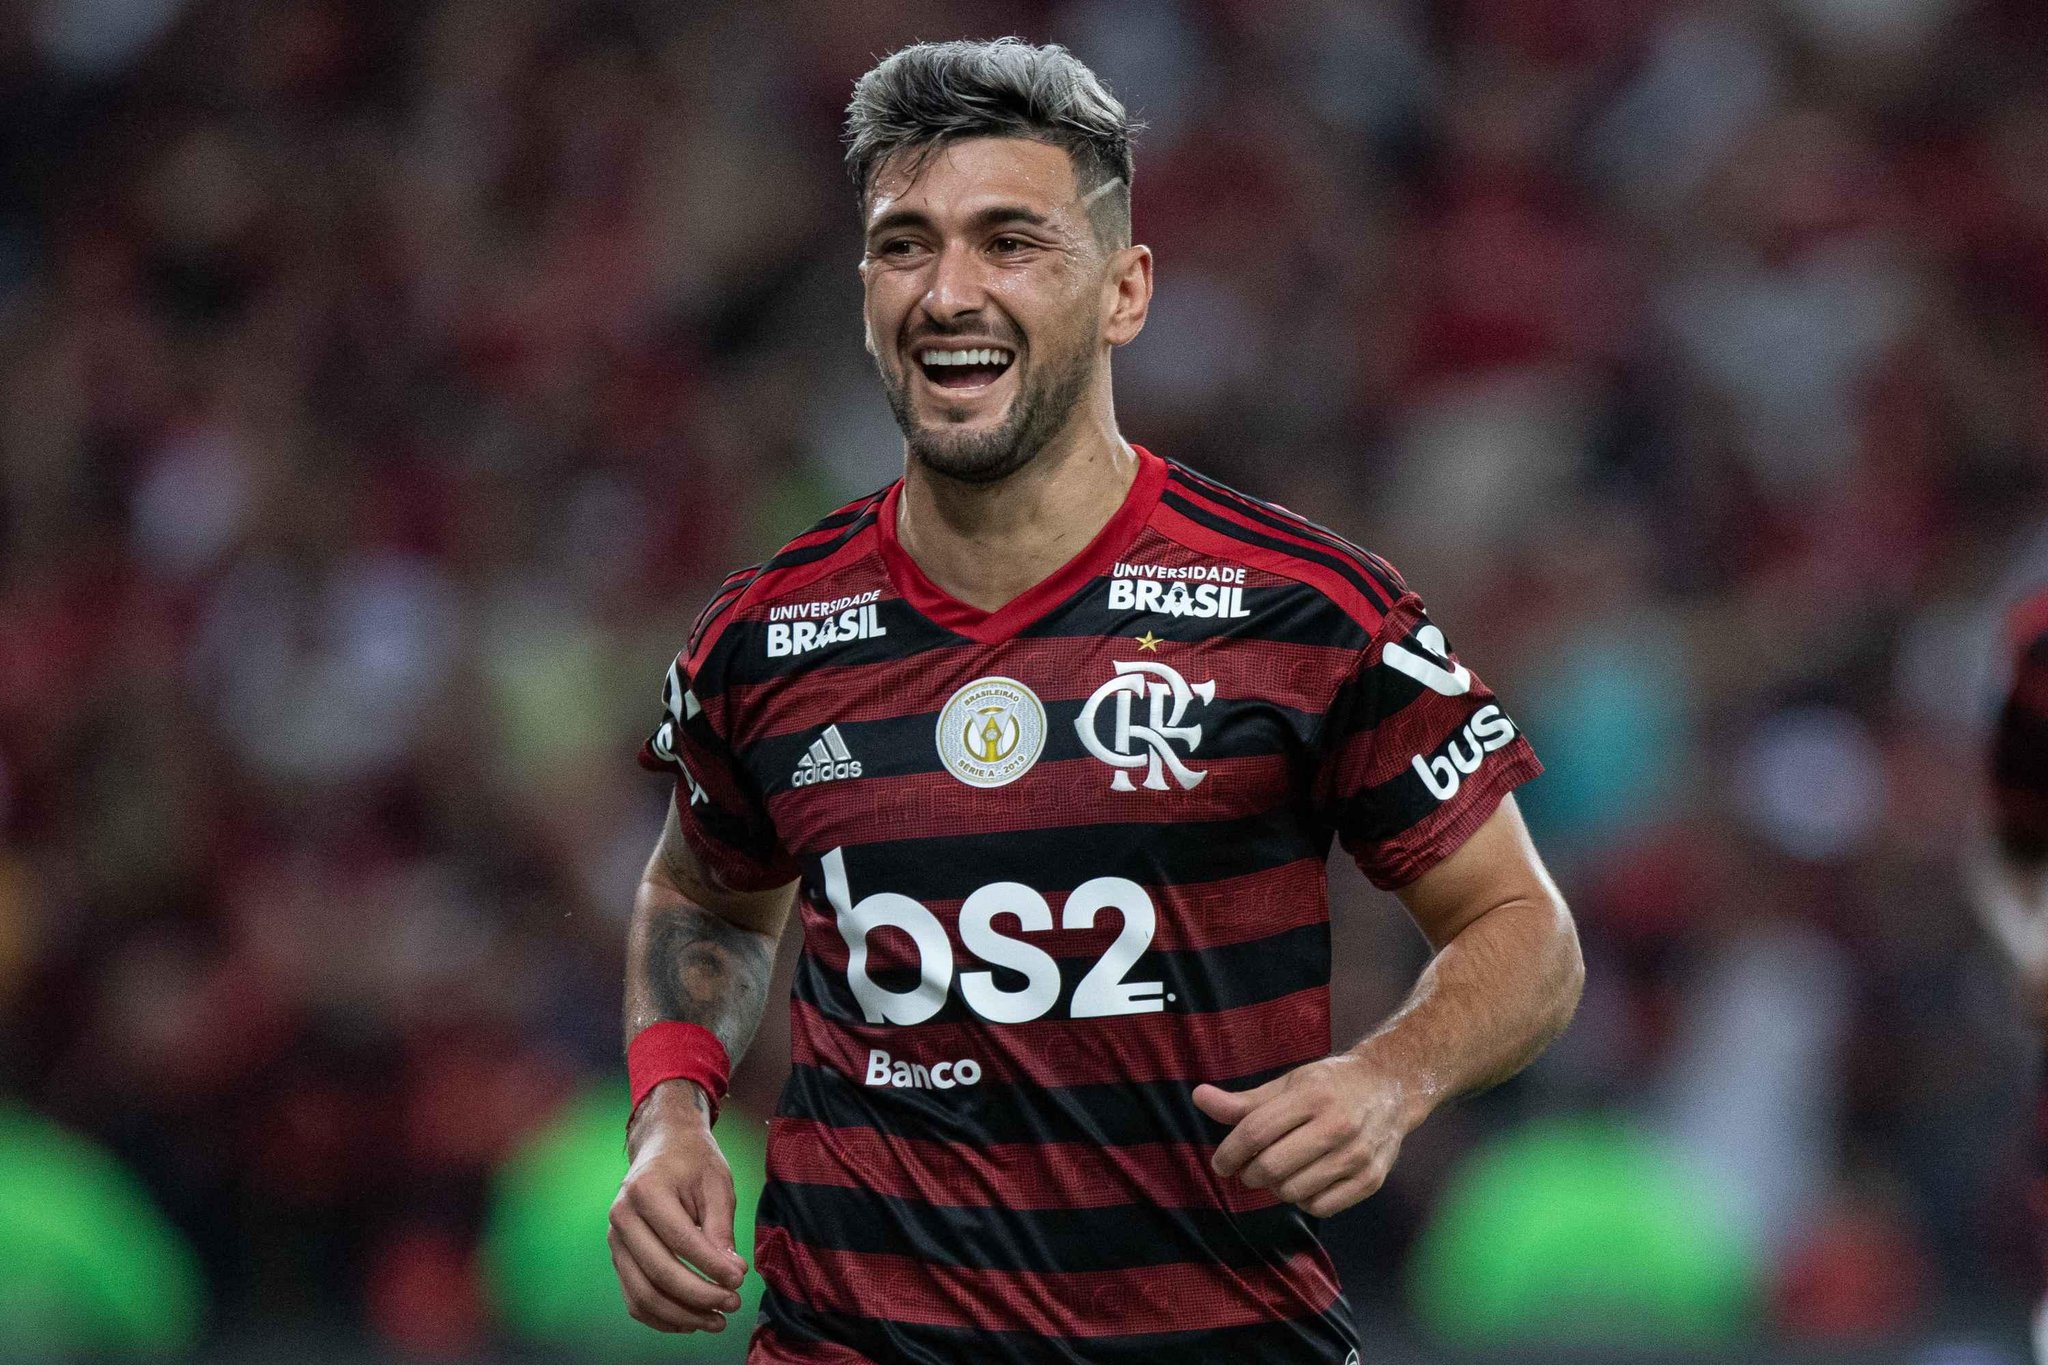 VÍDEO - Gol e Melhores Momentos de Flamengo 1 x 0 CSA